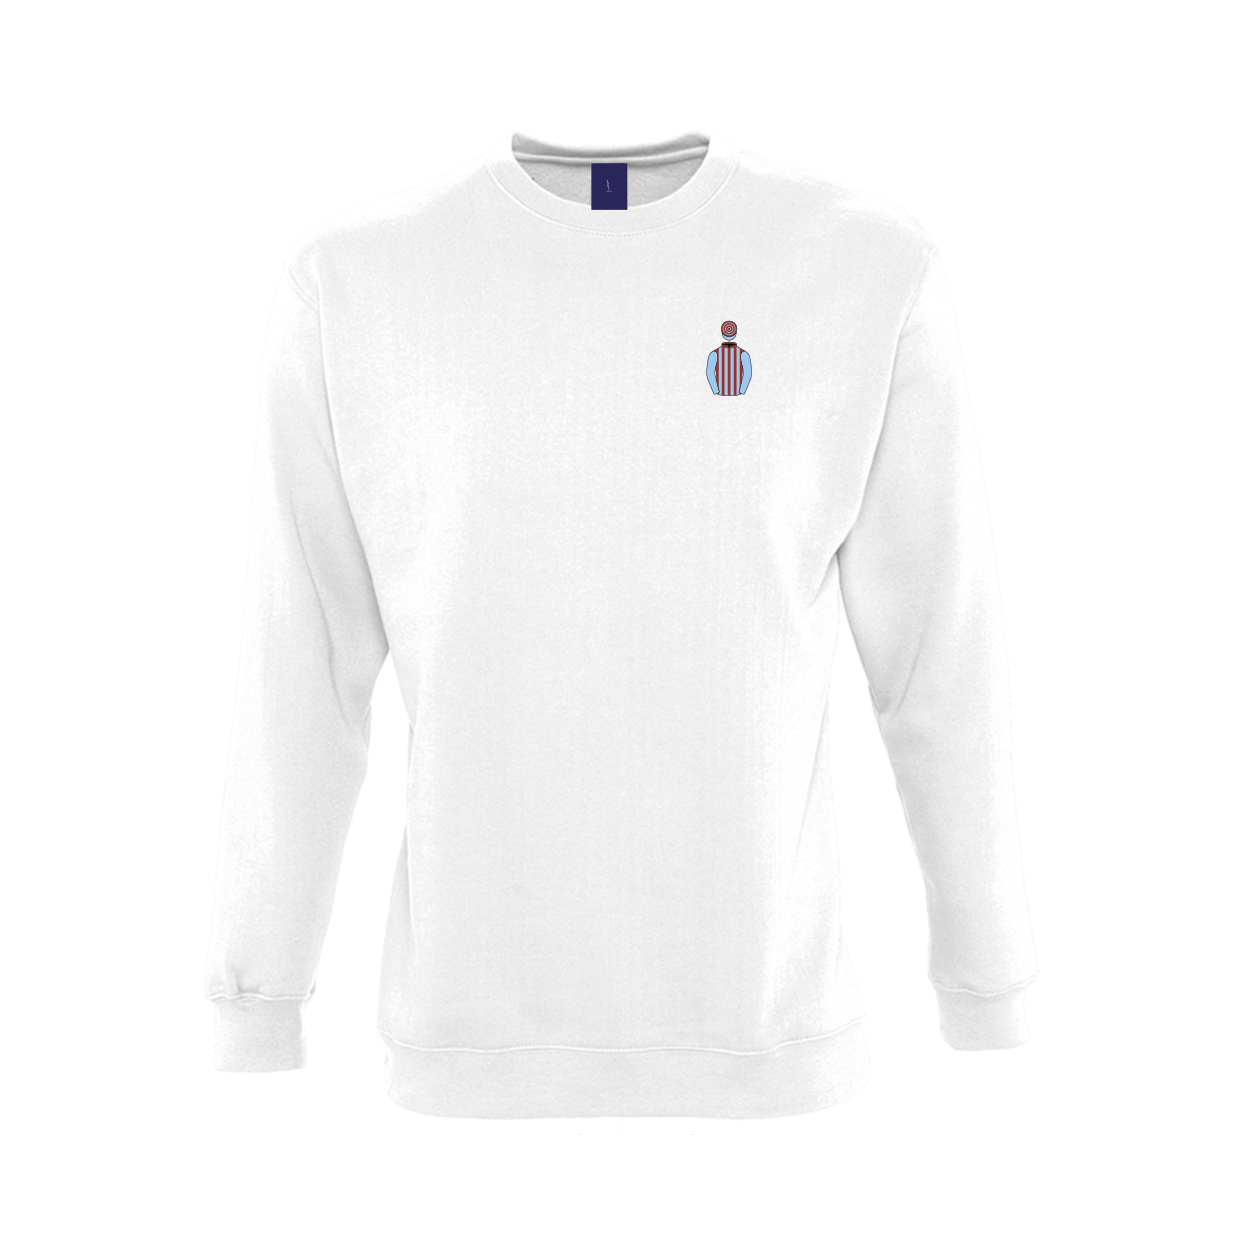 Unisex Jim Lewis Embroidered Sweatshirt - Clothing - Hacked Up